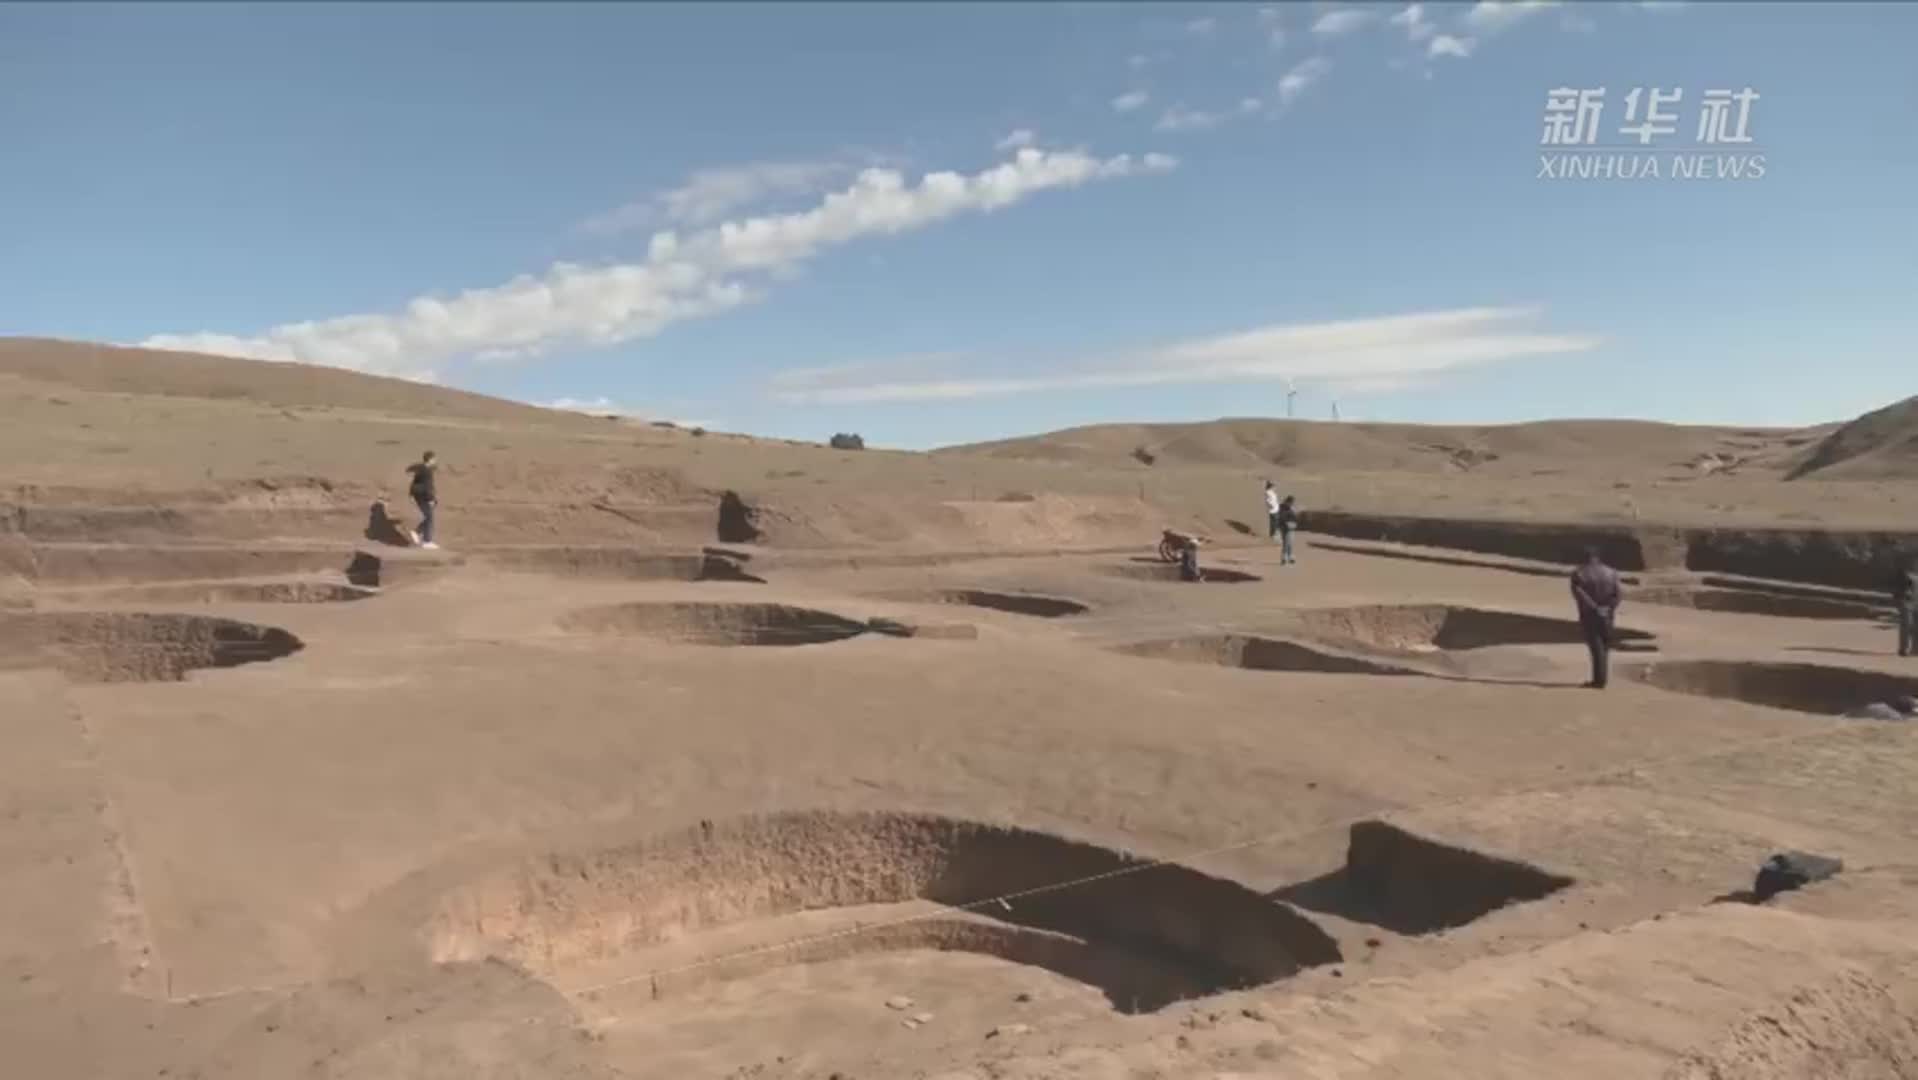 内蒙古发现新石器时代人类居住遗址